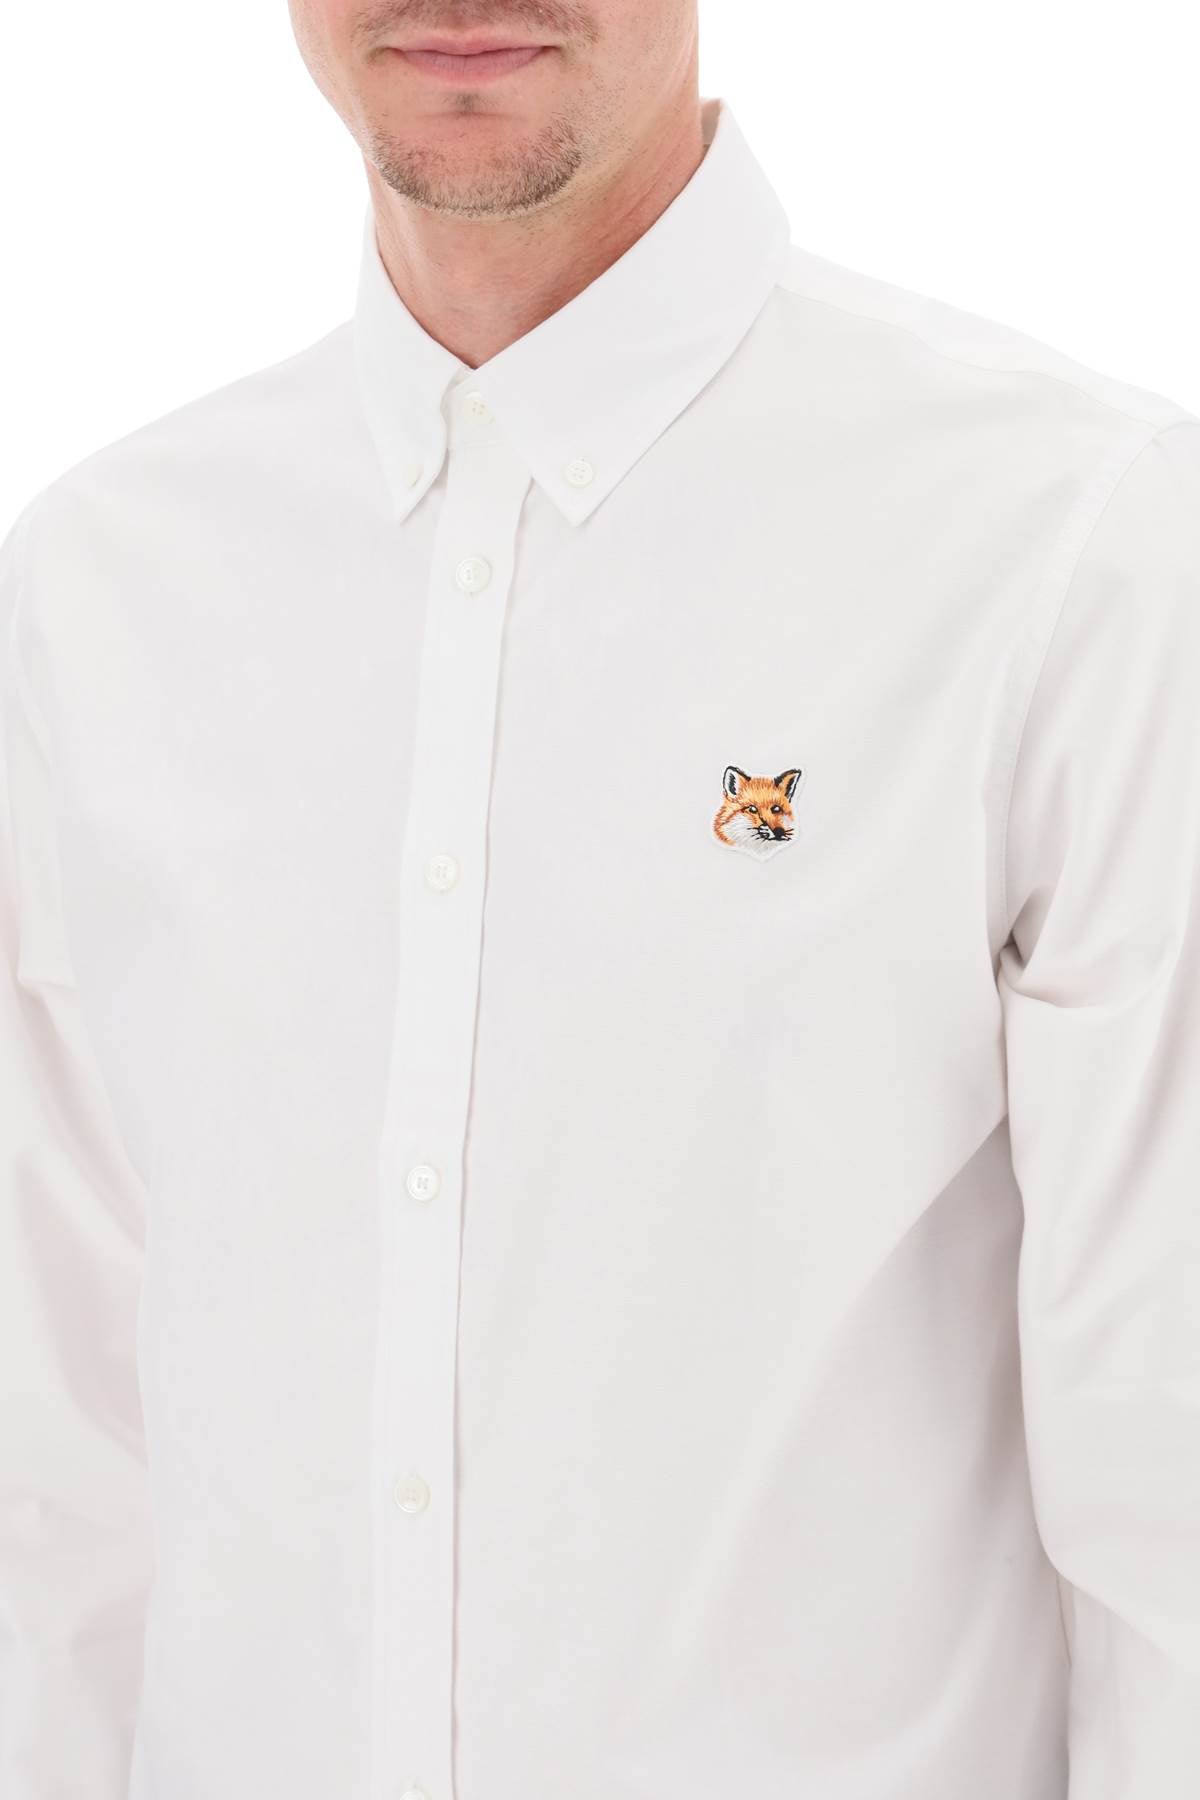 Maison Kitsune Maison kitsune fox head button-down shirt